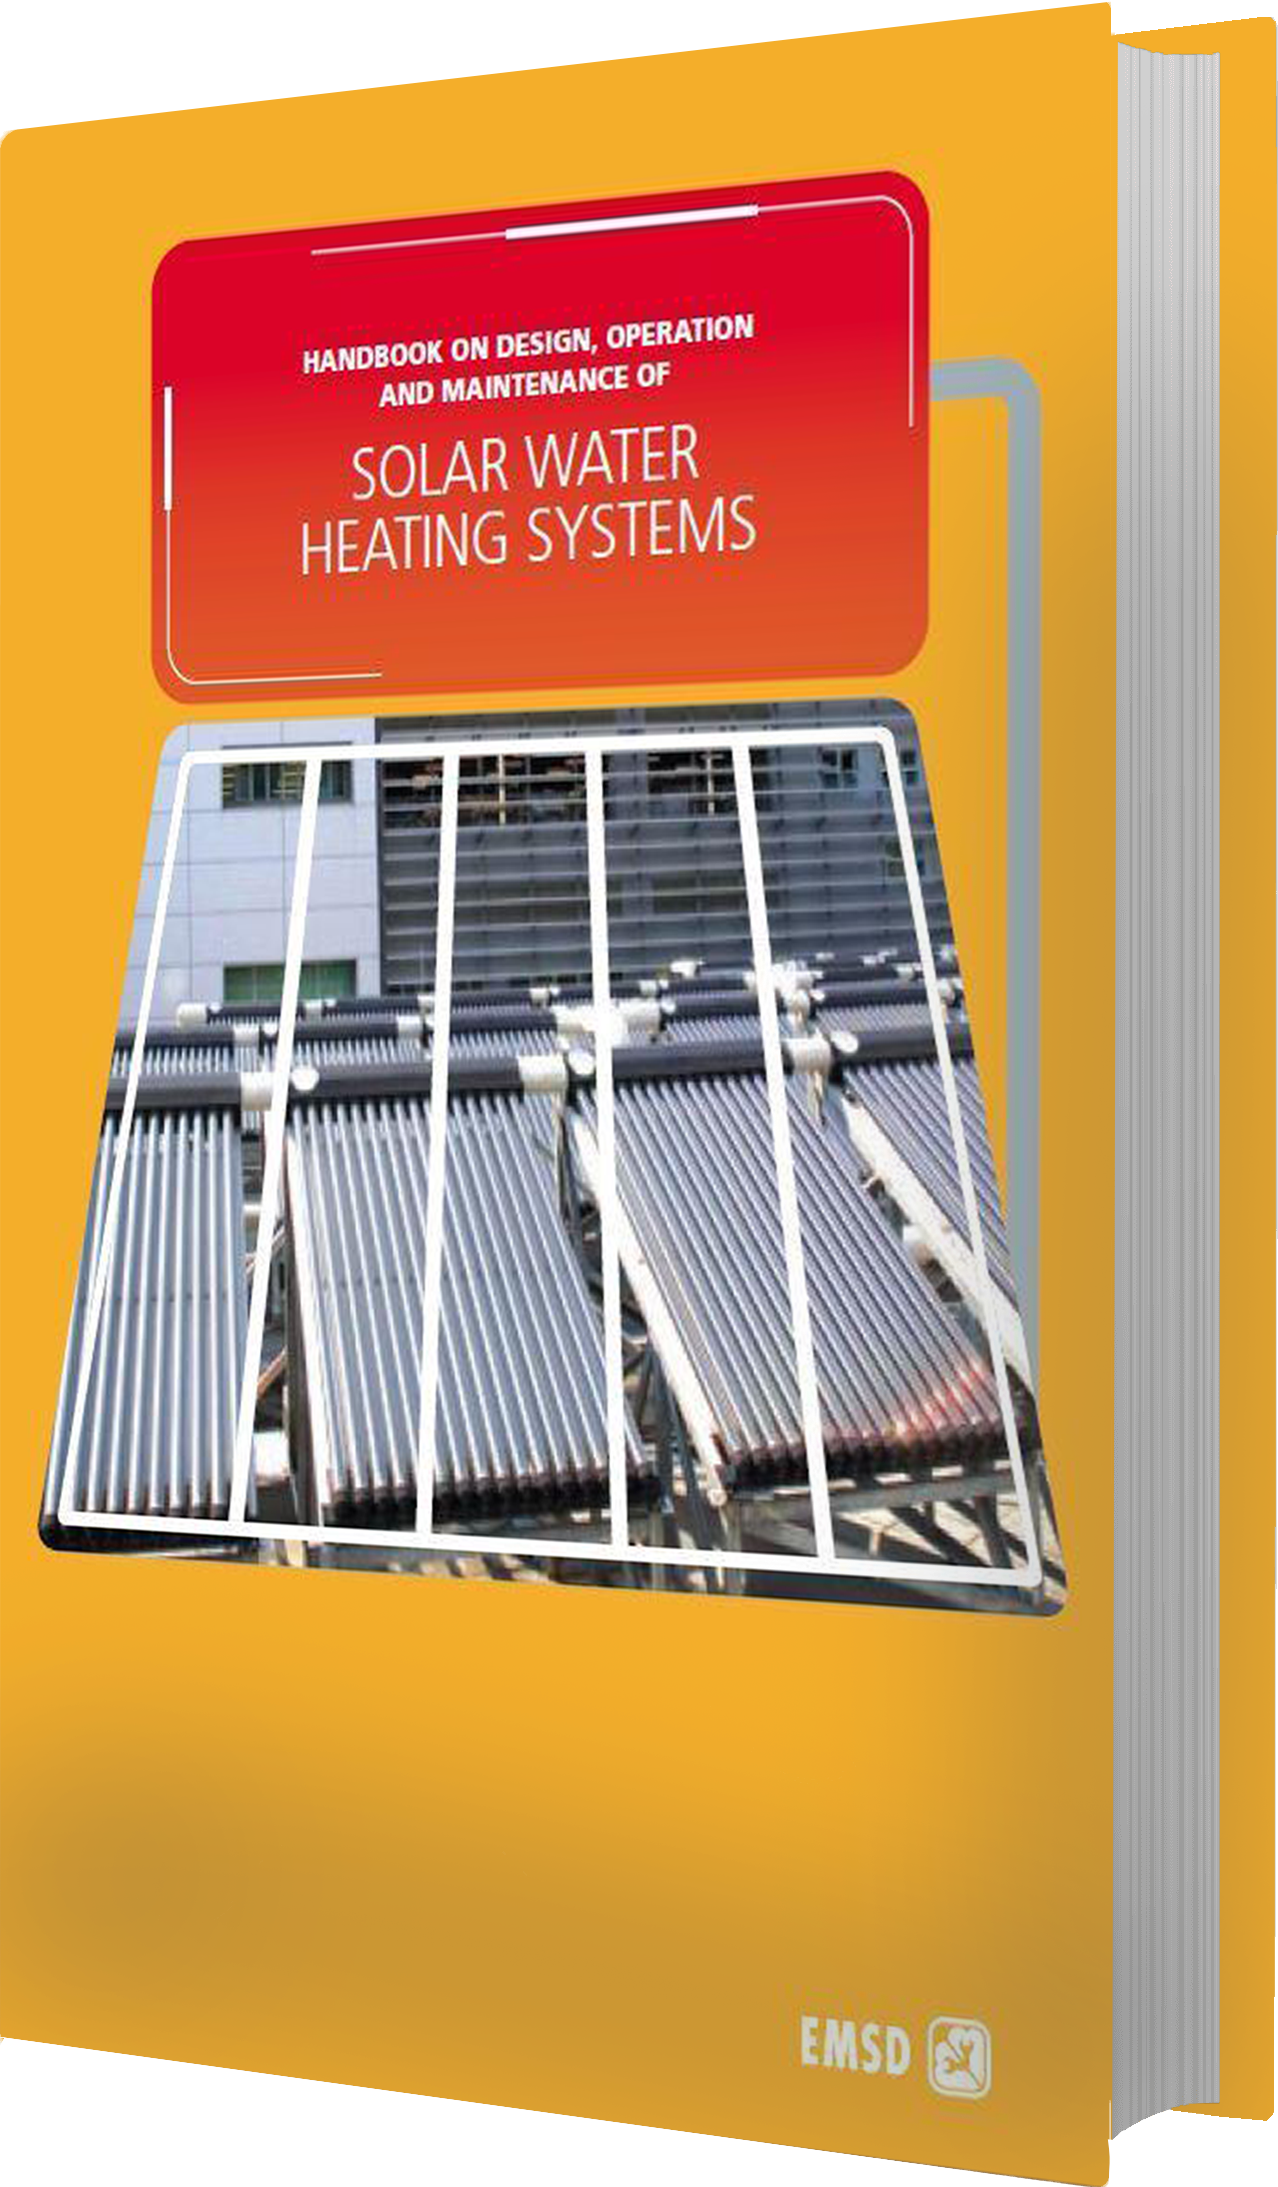 太陽能熱水系統